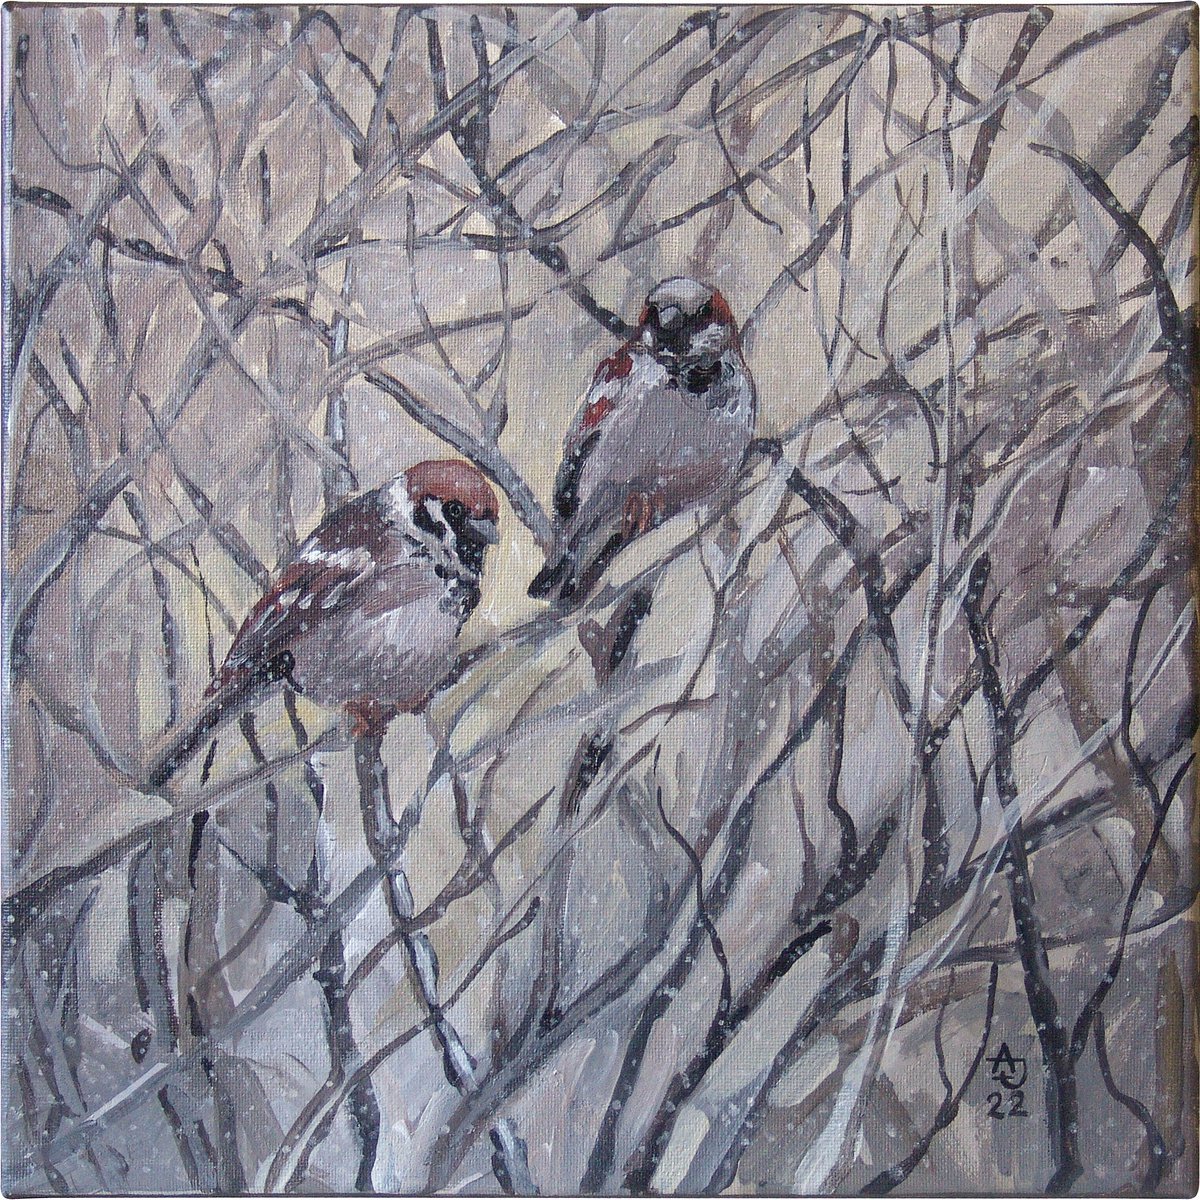 Sparrows by Jolanta Czarnecka